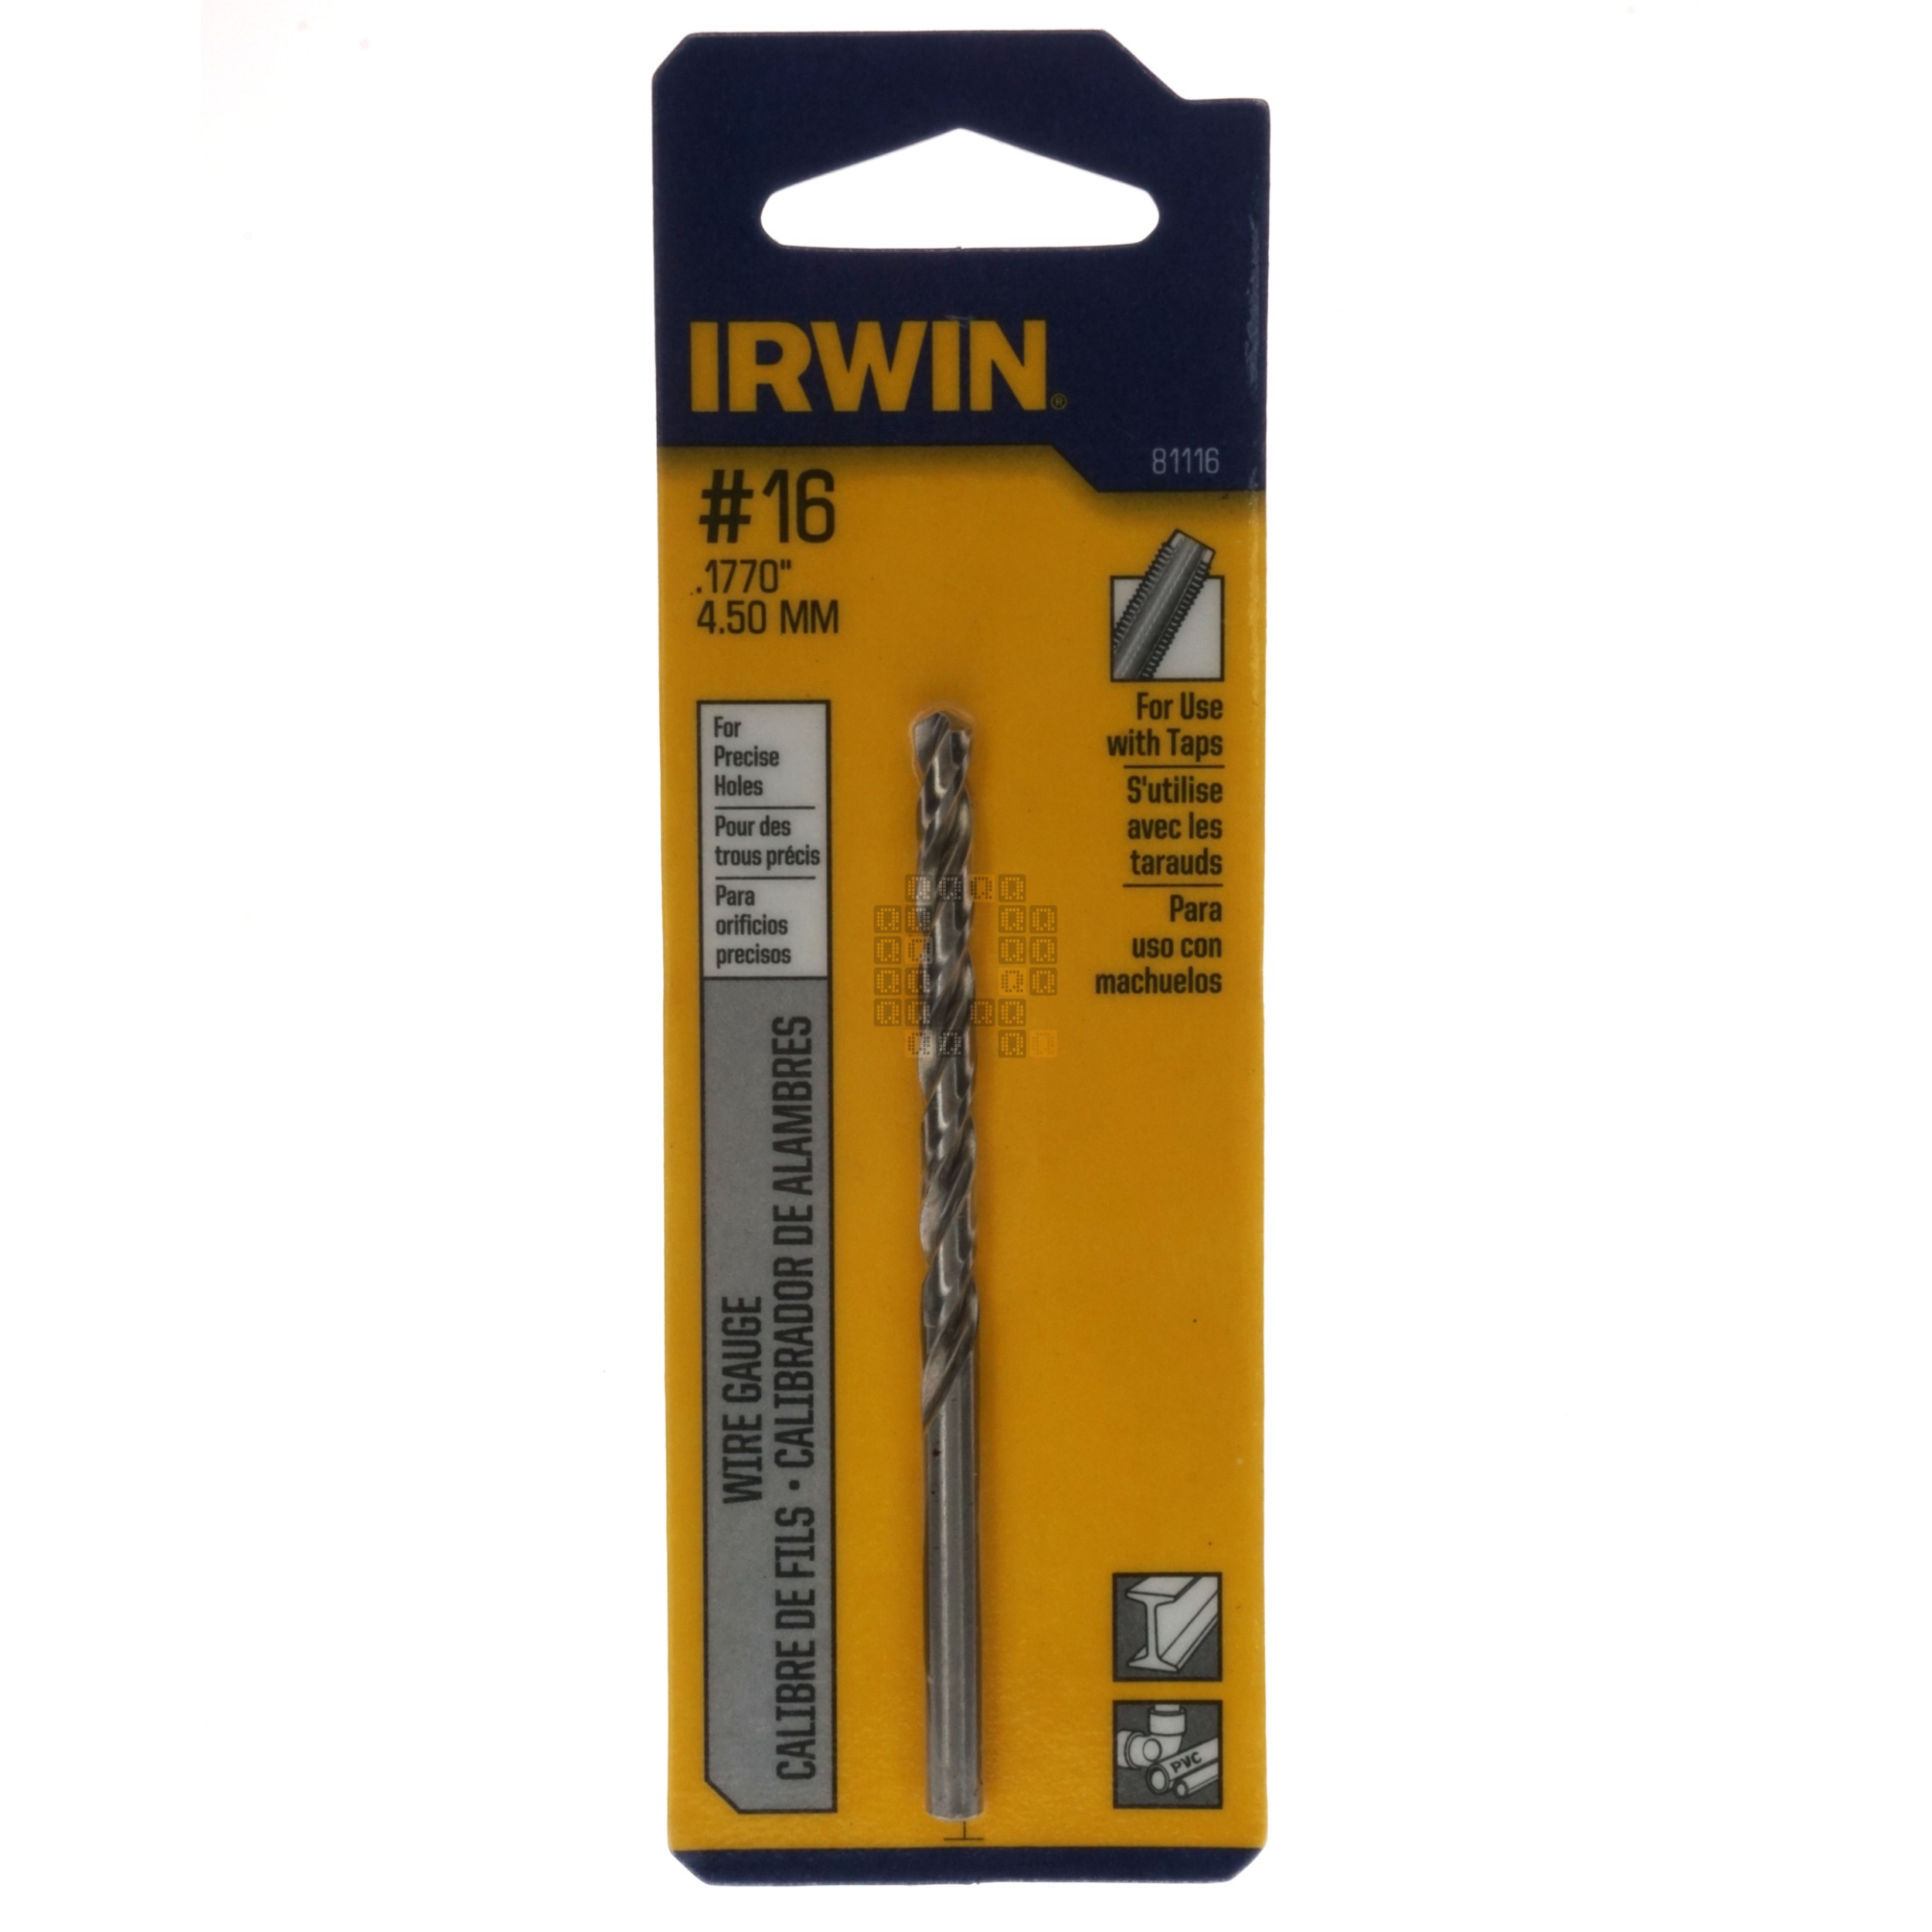 Irwin Industrial Tool 81116 #16 (0.1770") Jobber Length Wire Gauge Drill Bit